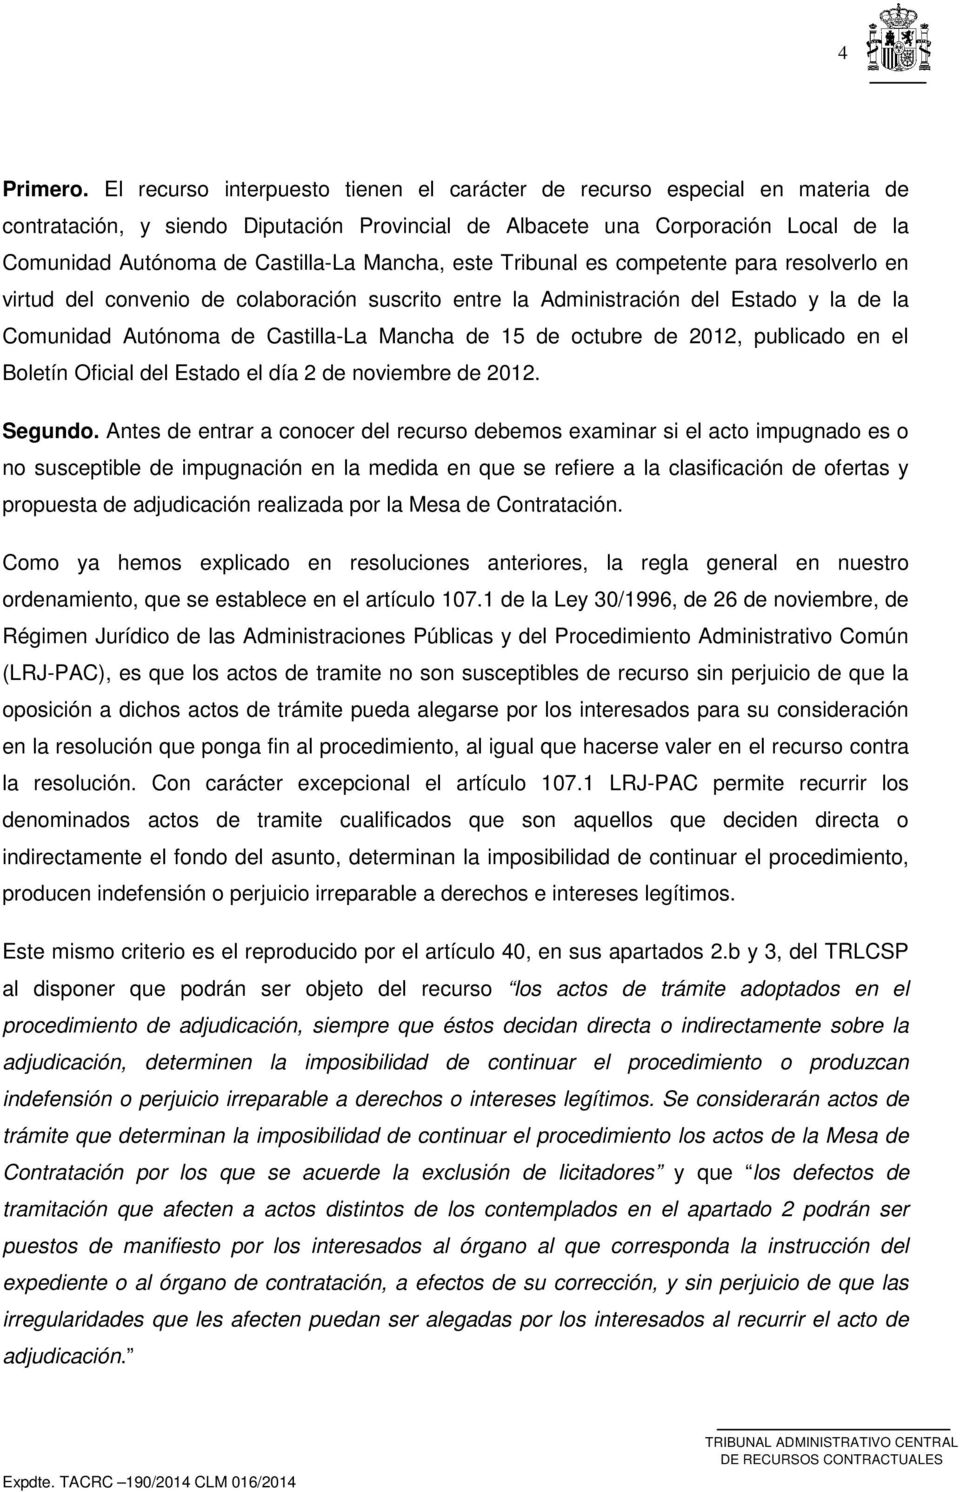 Mancha, este Tribunal es competente para resolverlo en virtud del convenio de colaboración suscrito entre la Administración del Estado y la de la Comunidad Autónoma de Castilla-La Mancha de 15 de